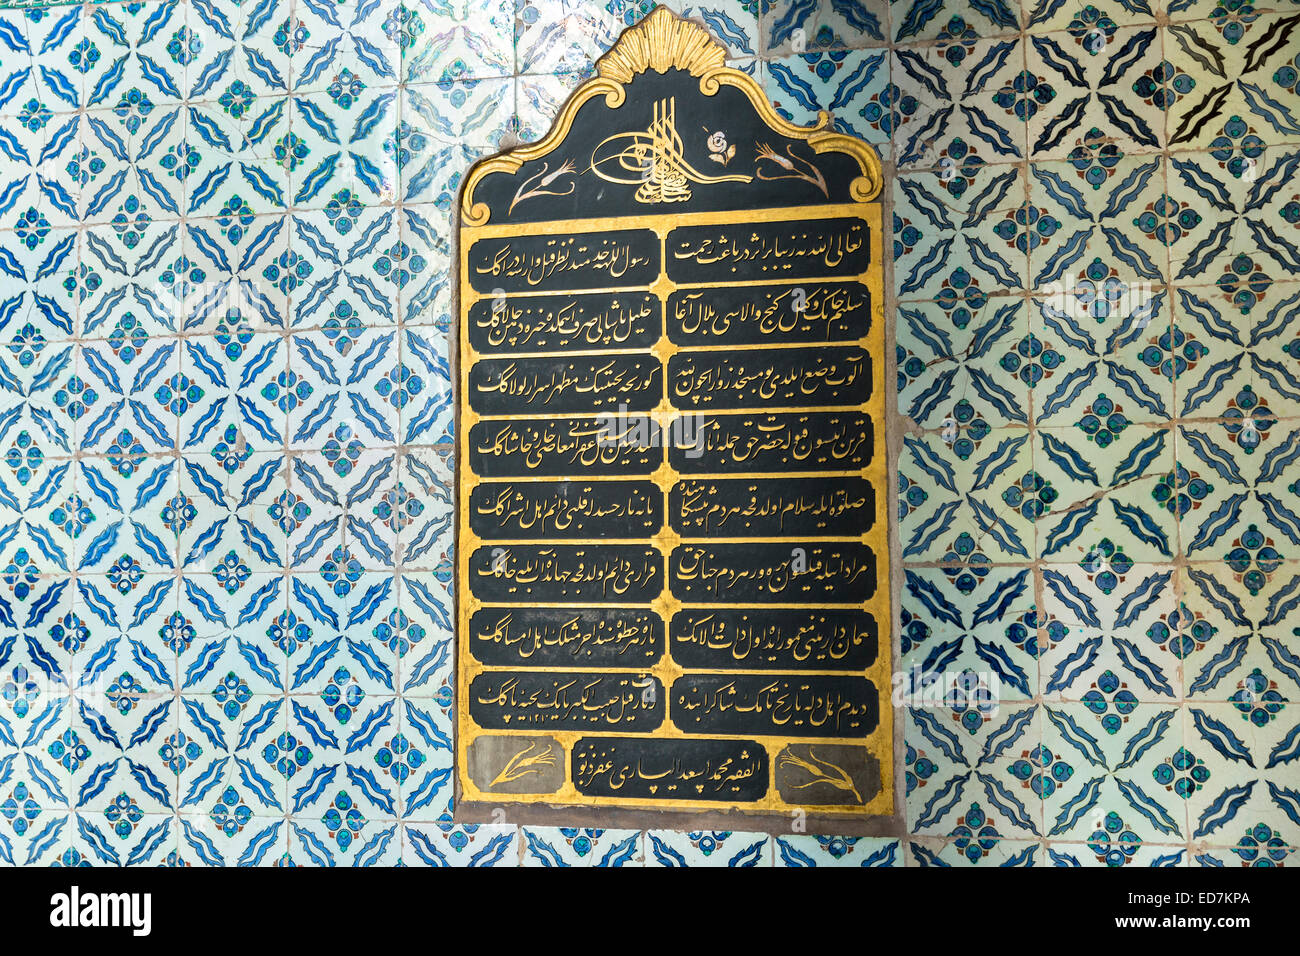 Türkische Skript Detail der Harem Quartale im Topkapi Palace, Topkapi Sarayi, des Osmanischen Reiches, in Istanbul, Türkei Stockfoto